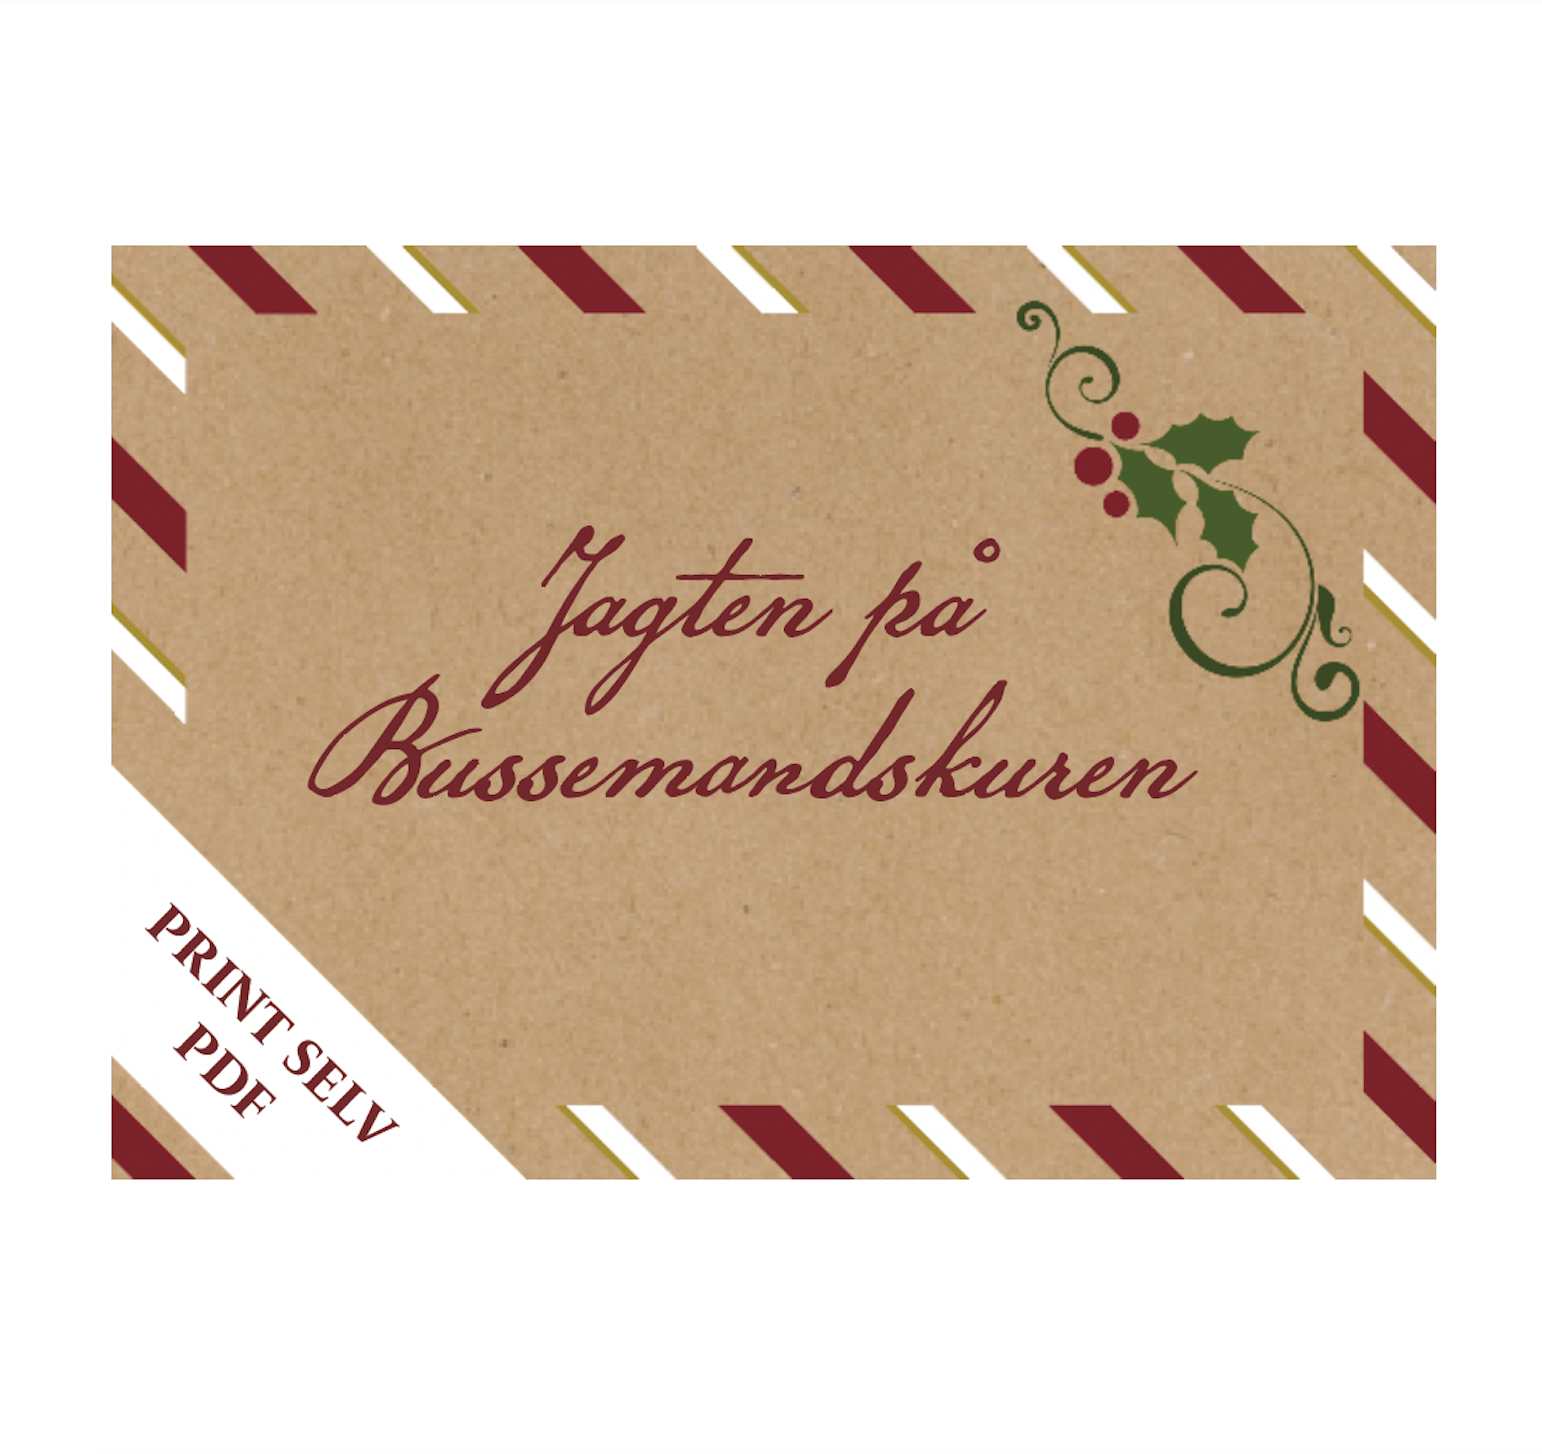 Jagten p Bussemandskuren-Julekalender med nissebreve-Print Selv PDF